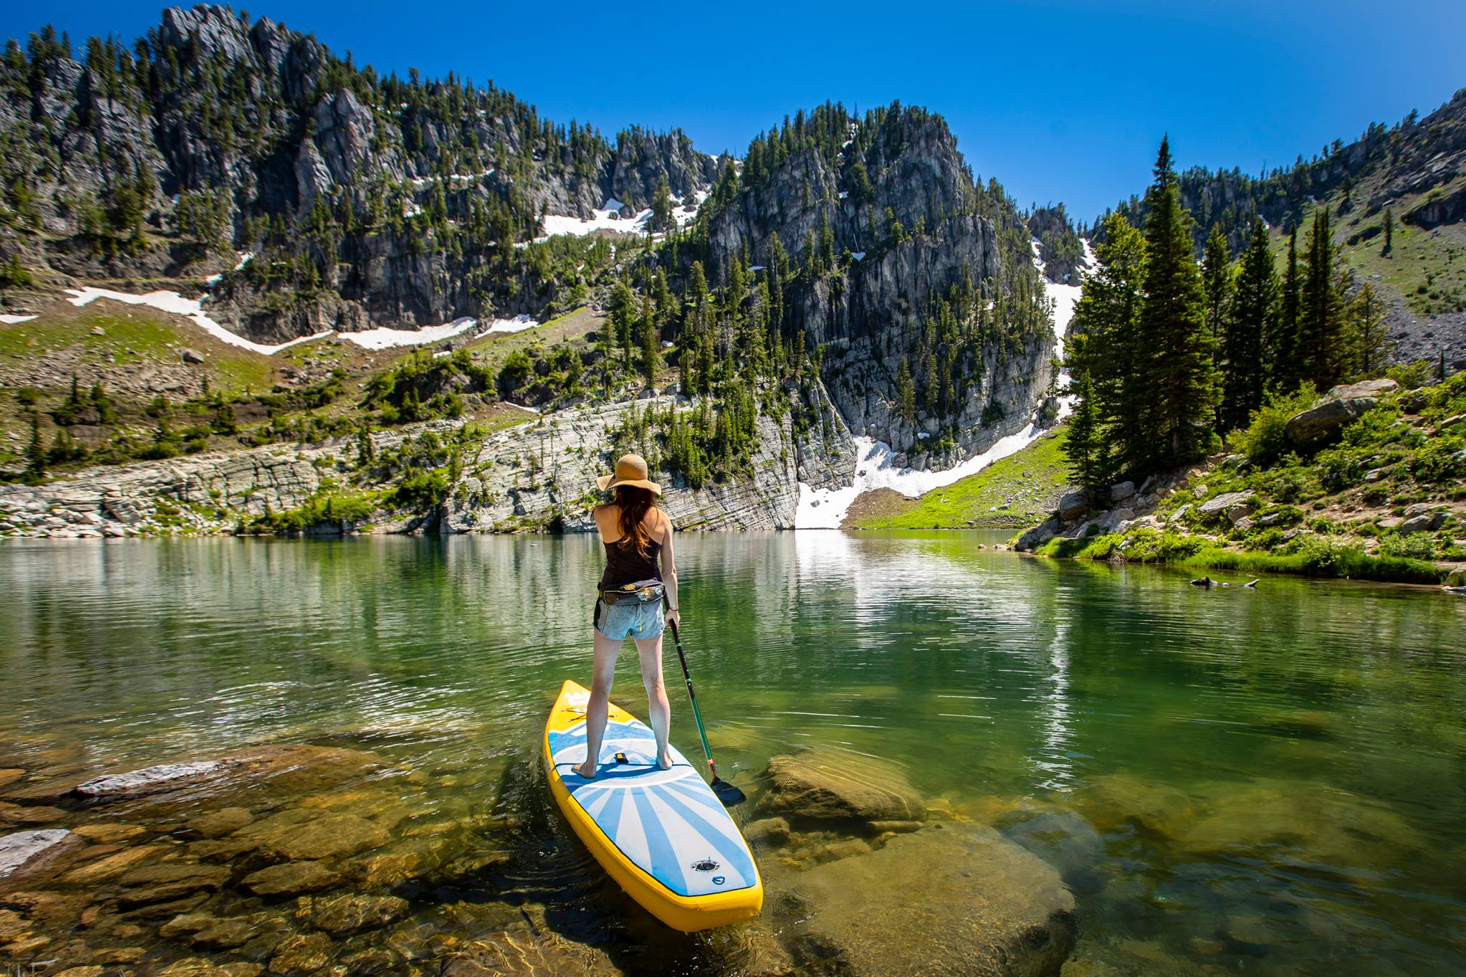 paddle board on a lake